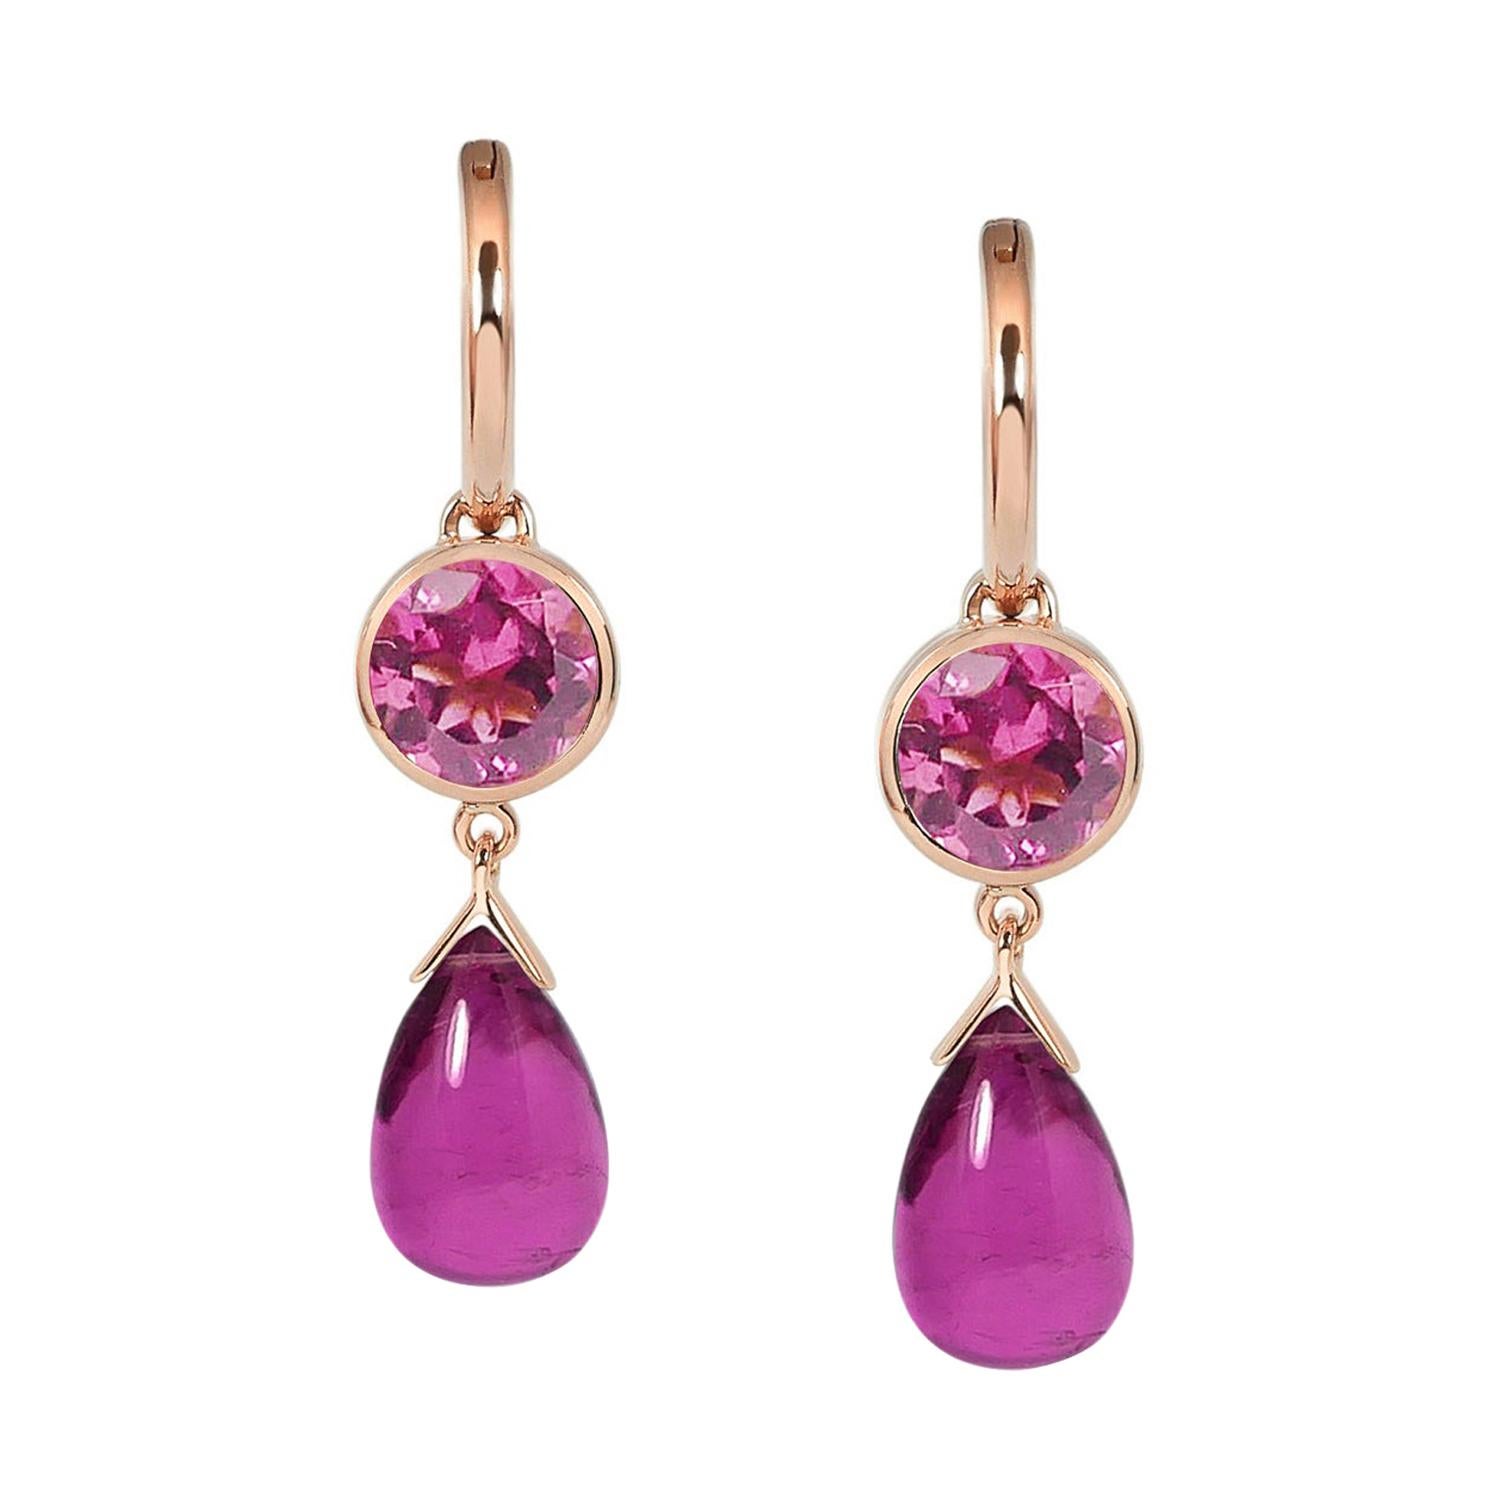 2.60 & 7.10 Carats Pink Tourmalines 18 Karat Rose Gold Drop Earrings For Sale